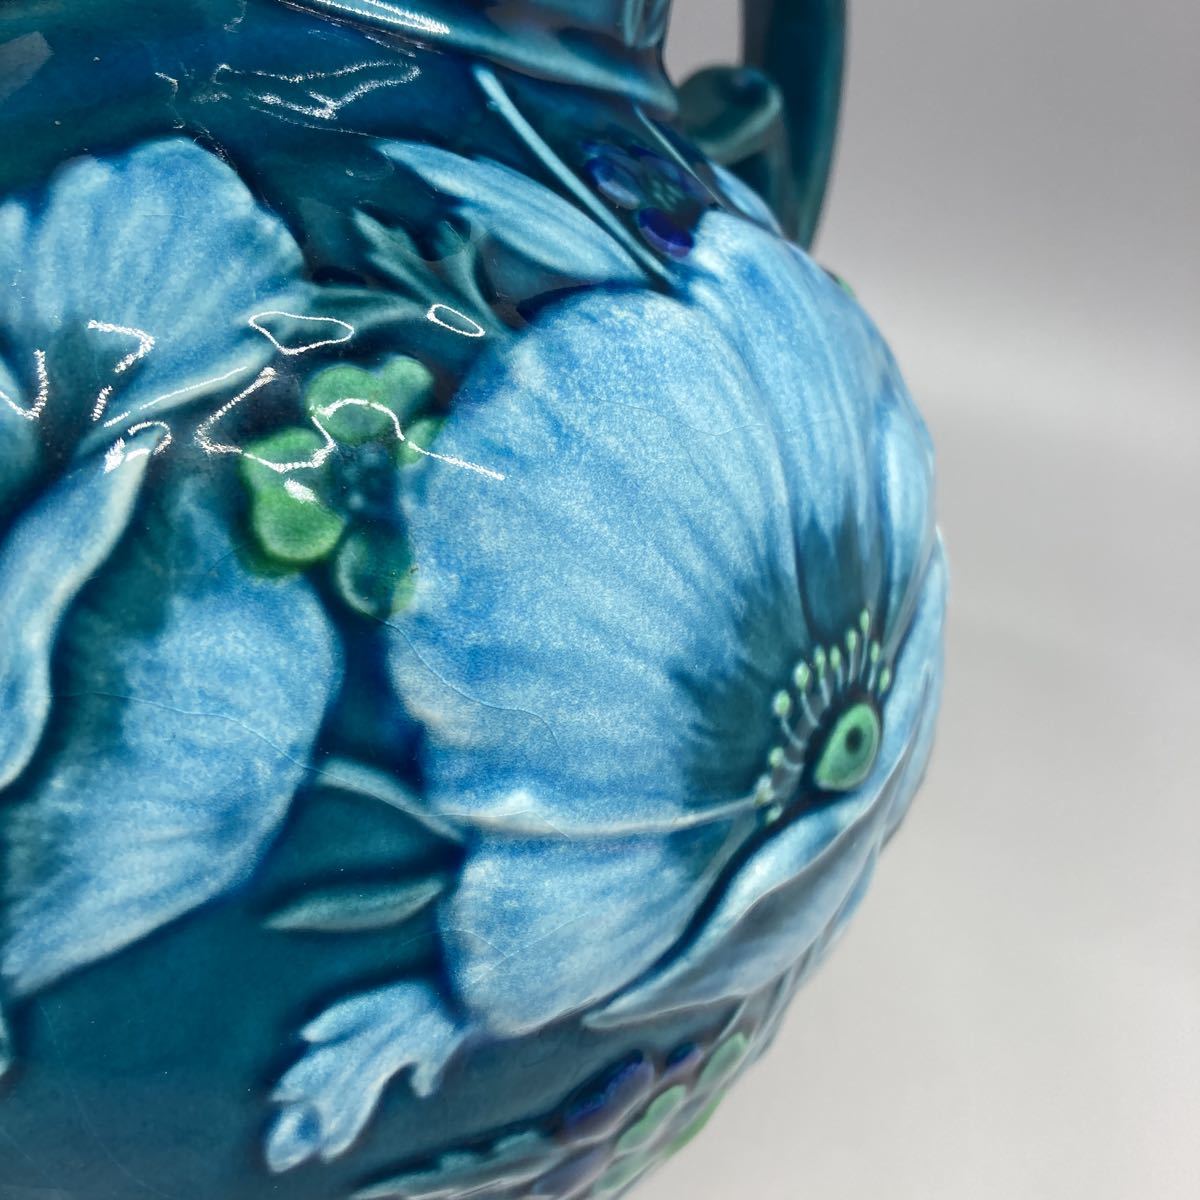  vase . ear flower base flower go in flower vase flower raw interior ornament 